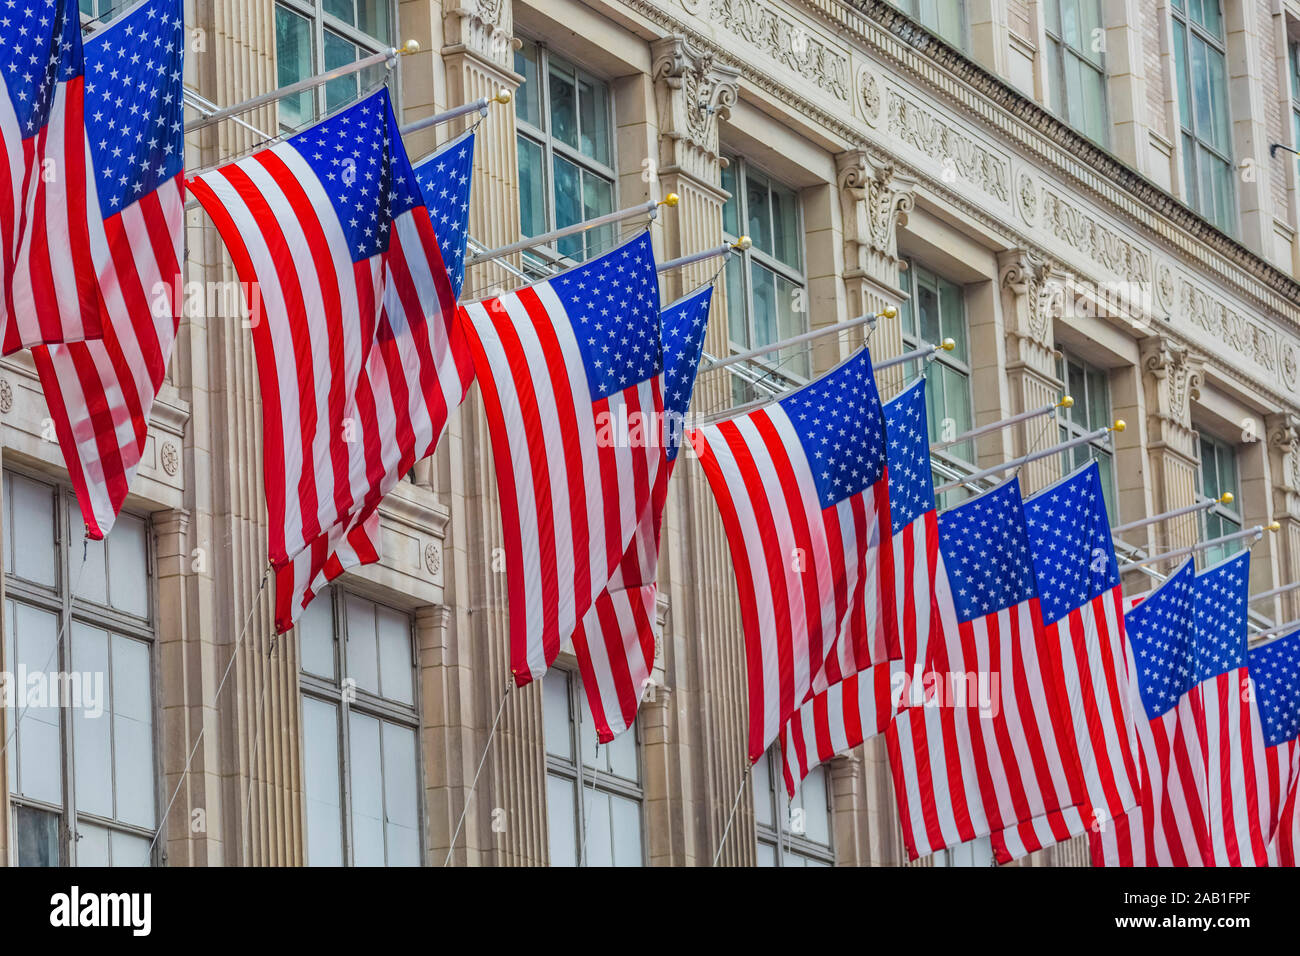 Amerikanische Fahnen floating eines der wichtigsten Wahrzeichen in Manhattan, New York City, USA Stockfoto